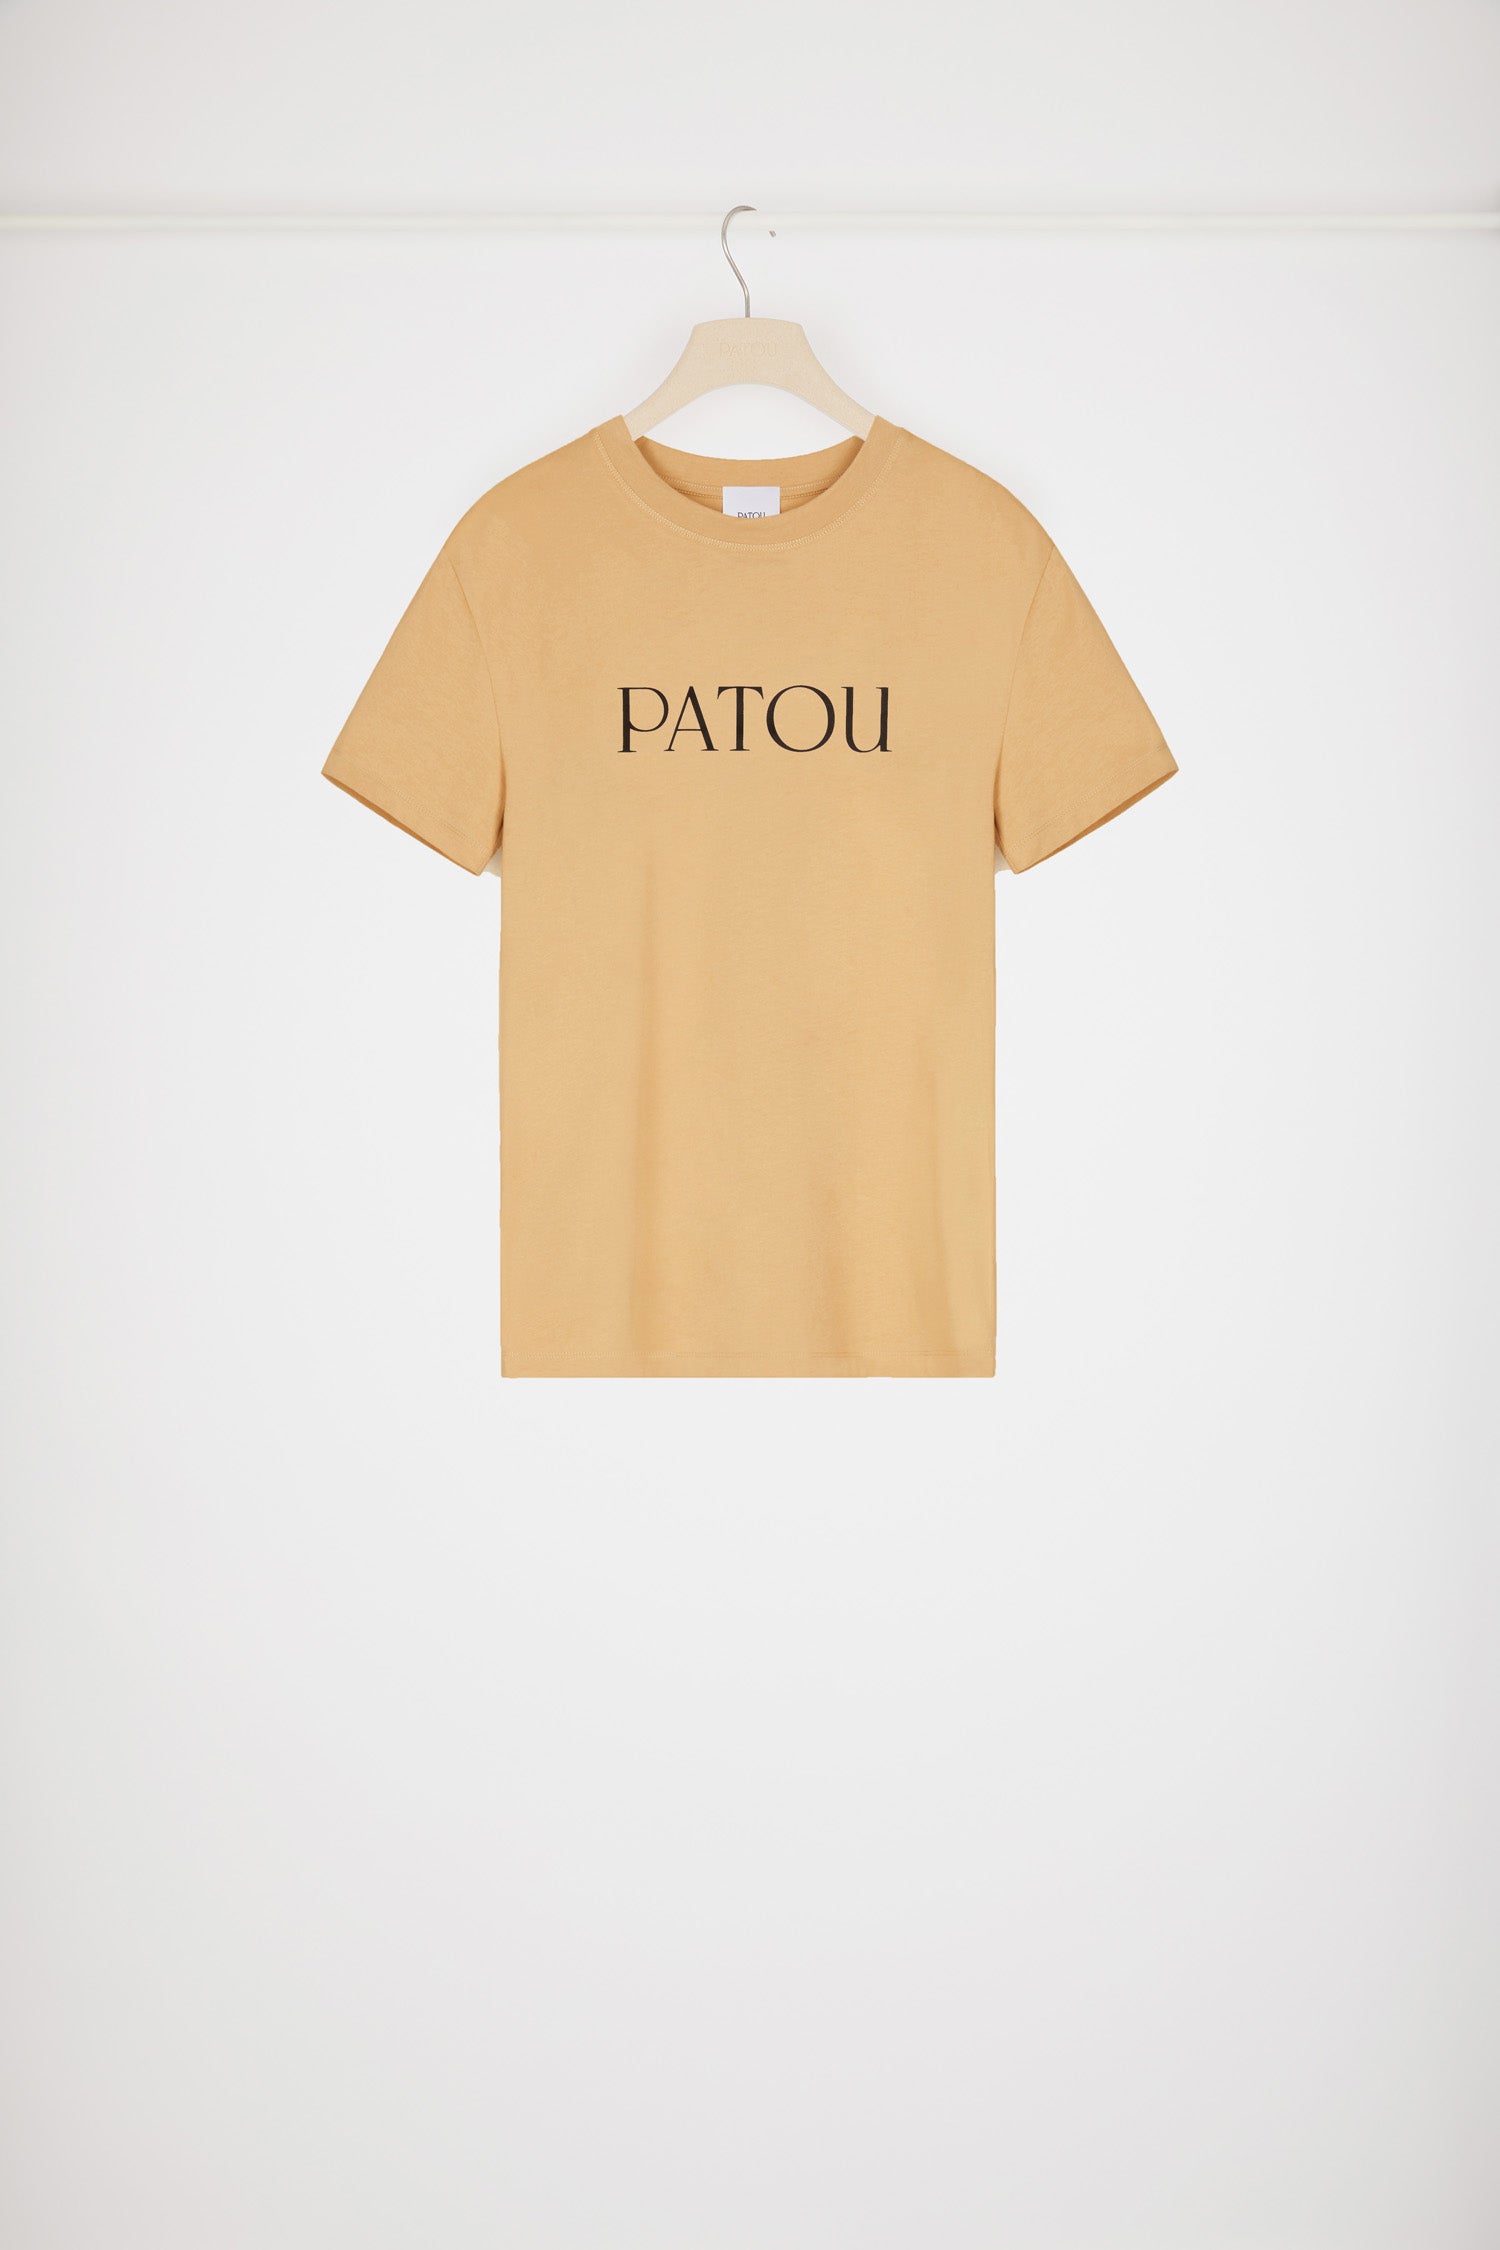 ★PATOU オーガニックコットン パトゥロゴTシャツ  S